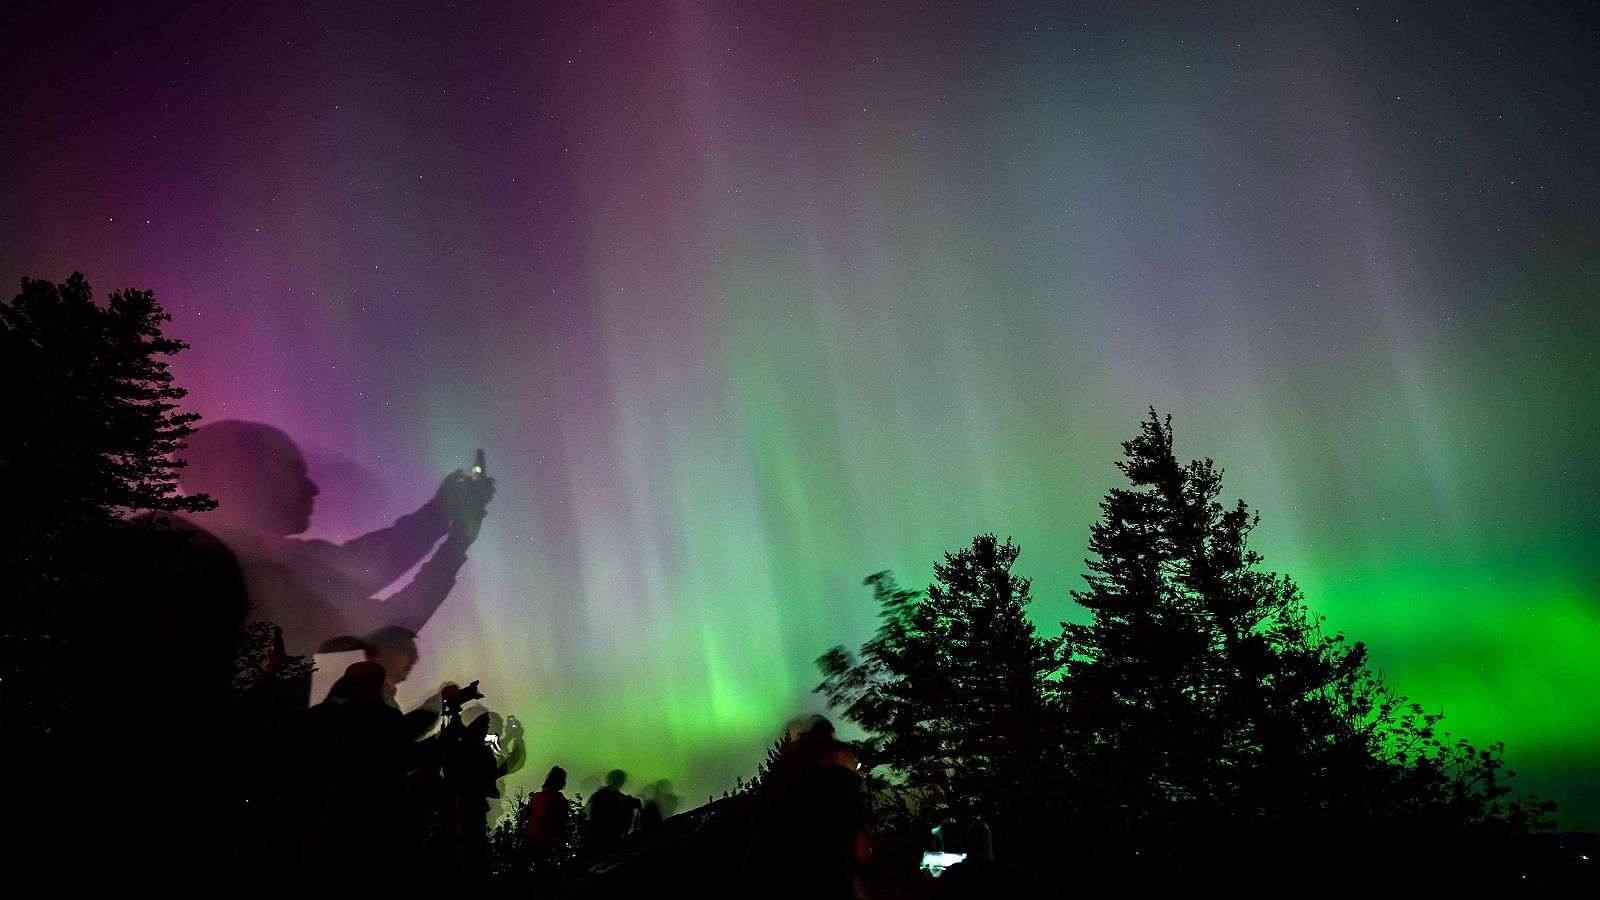 Una inusual aurora boreal puede repetirse el fin de semana en zonas de América y Europa